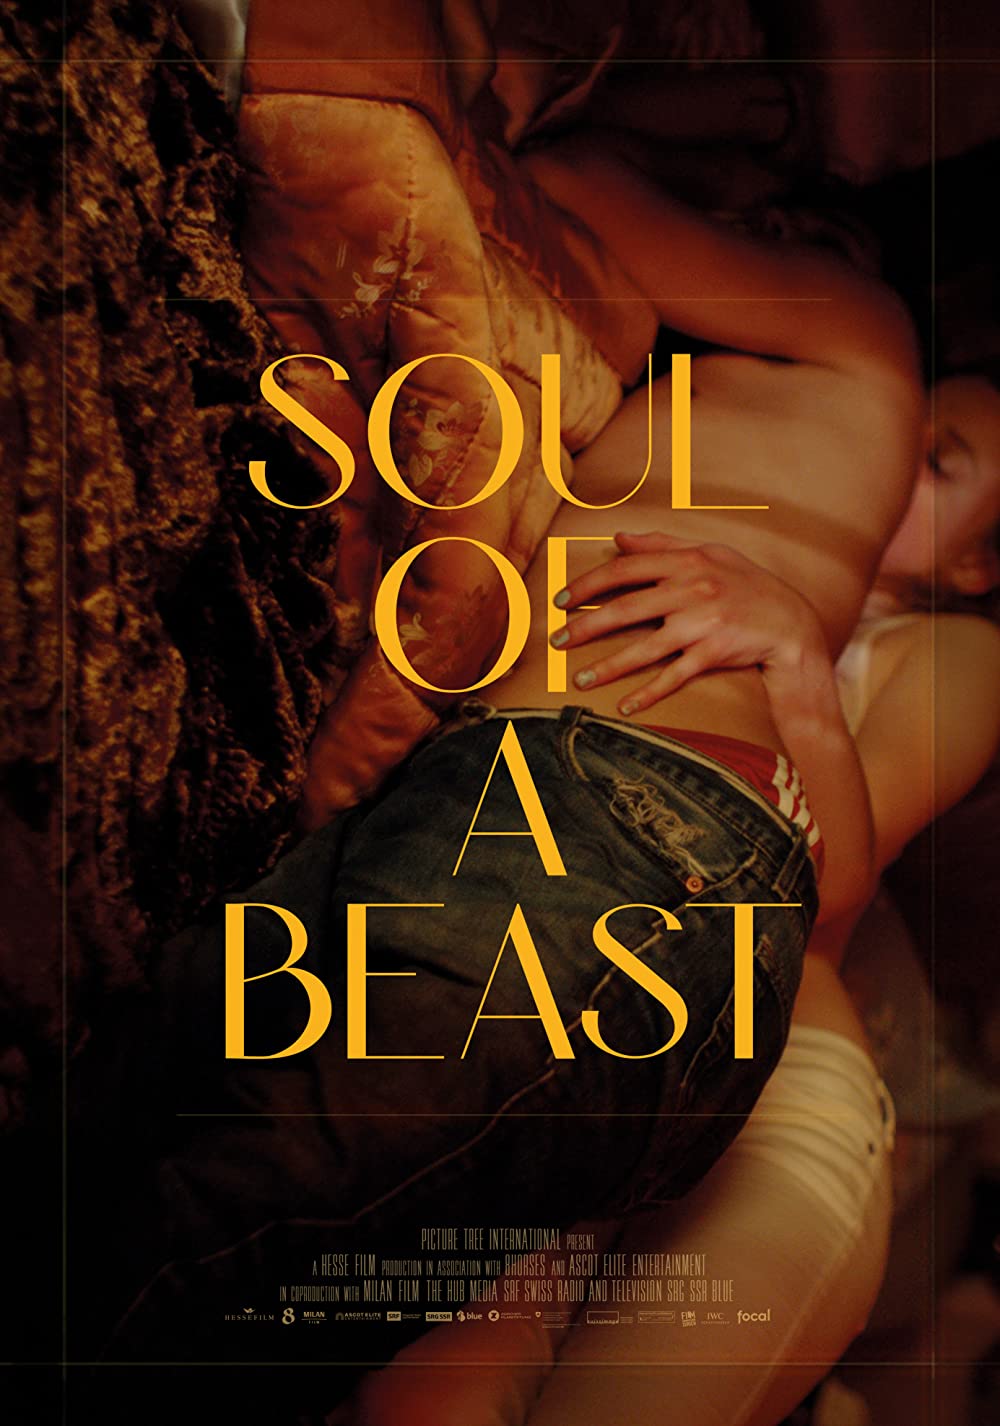 Filmbeschreibung zu Soul of a Beast